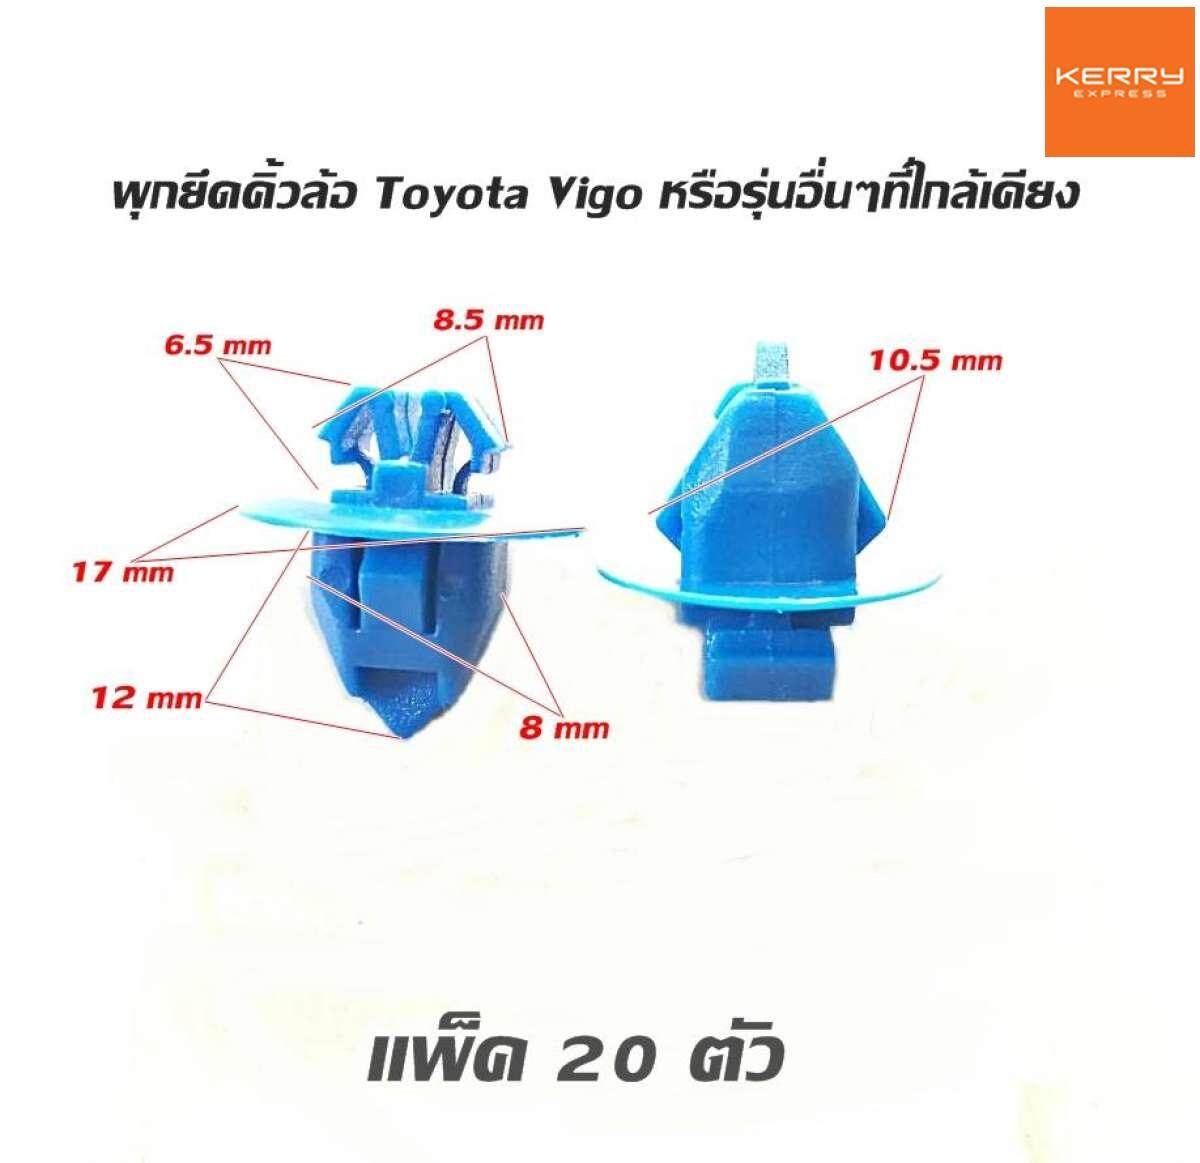 หมุดยึด clip พุกคิ้วแก้มล้อรถยนต์ แพ็ค 20 ตัว พลาสติกภายในรถยนต์ ใช้ได้กับรถยนต์หลายรุ่น TOYOTA ISUZU NISSAN